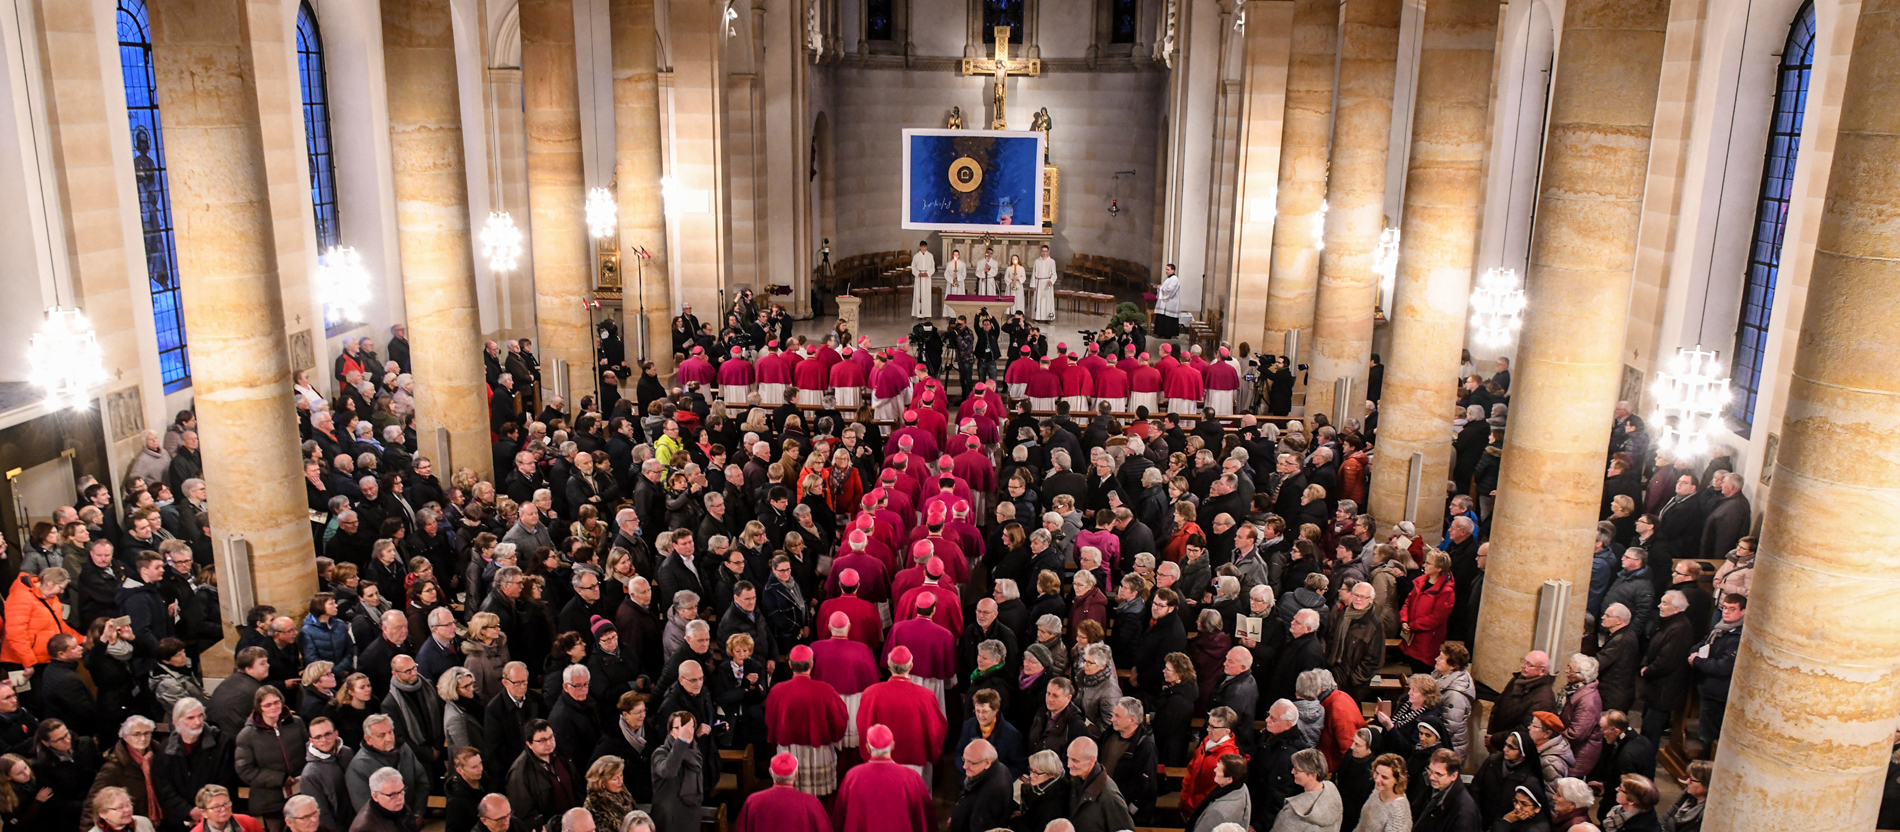 Biskupi u Njemačkoj se zajedničkom izjavom distancirali od desnog ekstremizma